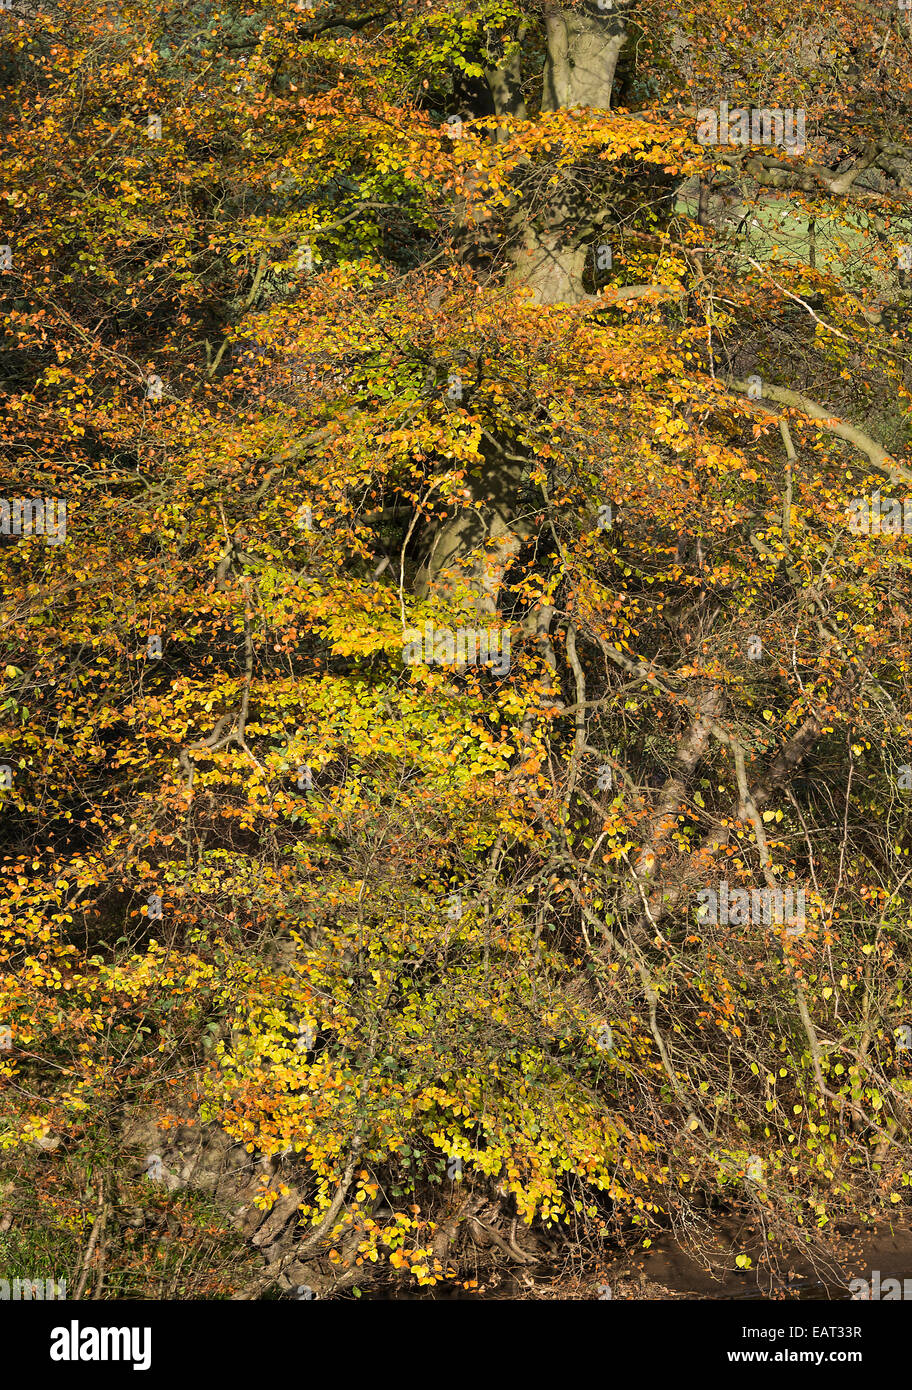 Herbstliche Farbtöne von einer Buche am Ufer des River Derwent in der Nähe von Hathersage Derbyshire England Vereinigtes Königreich UK Stockfoto